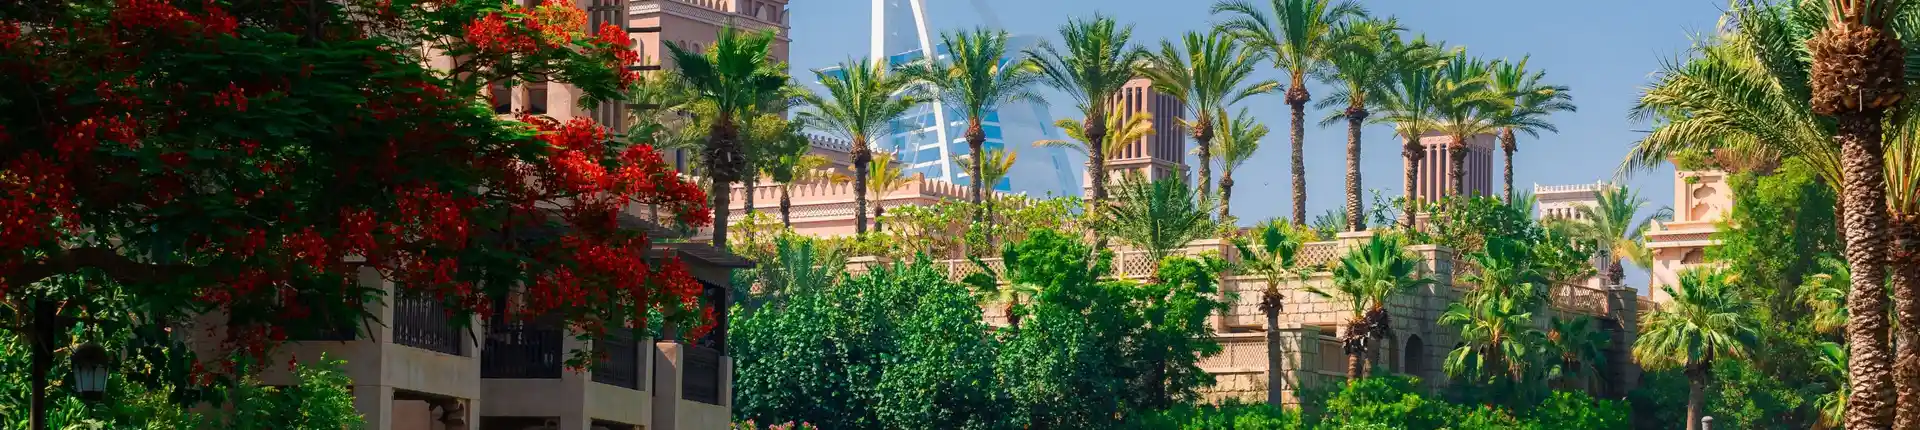 افضل 10 اماكن سياحية في الامارات